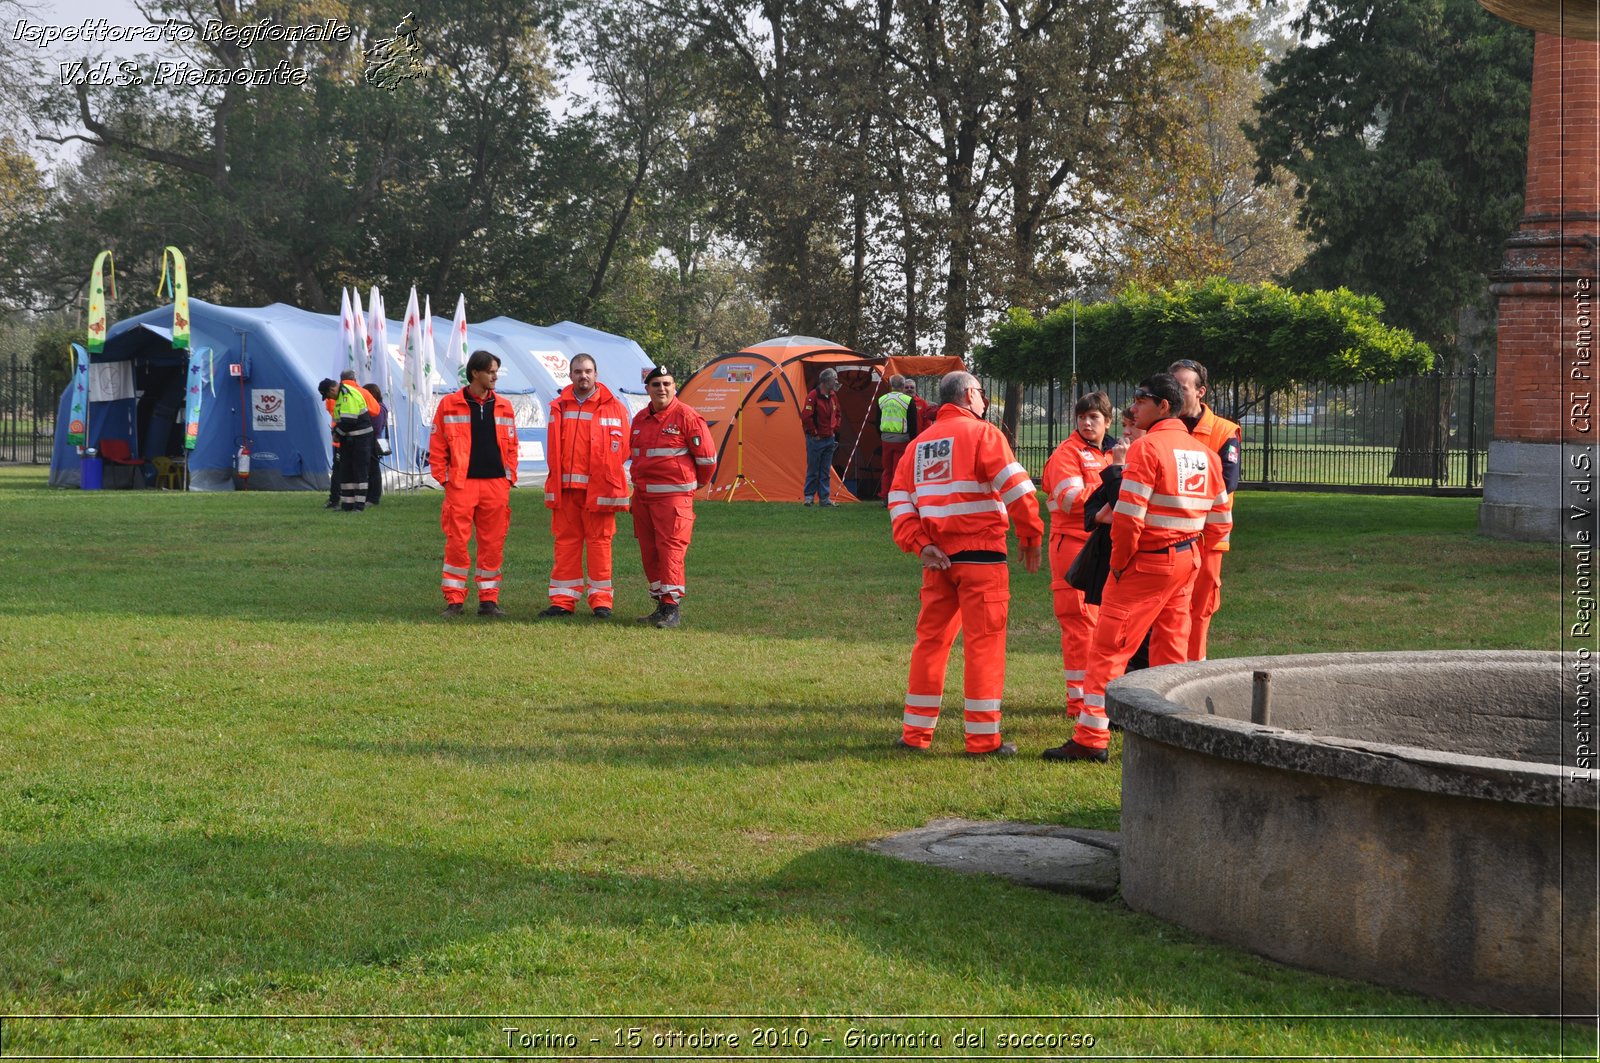 Torino - 15 ottobre 2010 - Fondazione CRT, Giornata del soccorso -  Croce Rossa Italiana - Ispettorato Regionale Volontari del Soccorso Piemonte